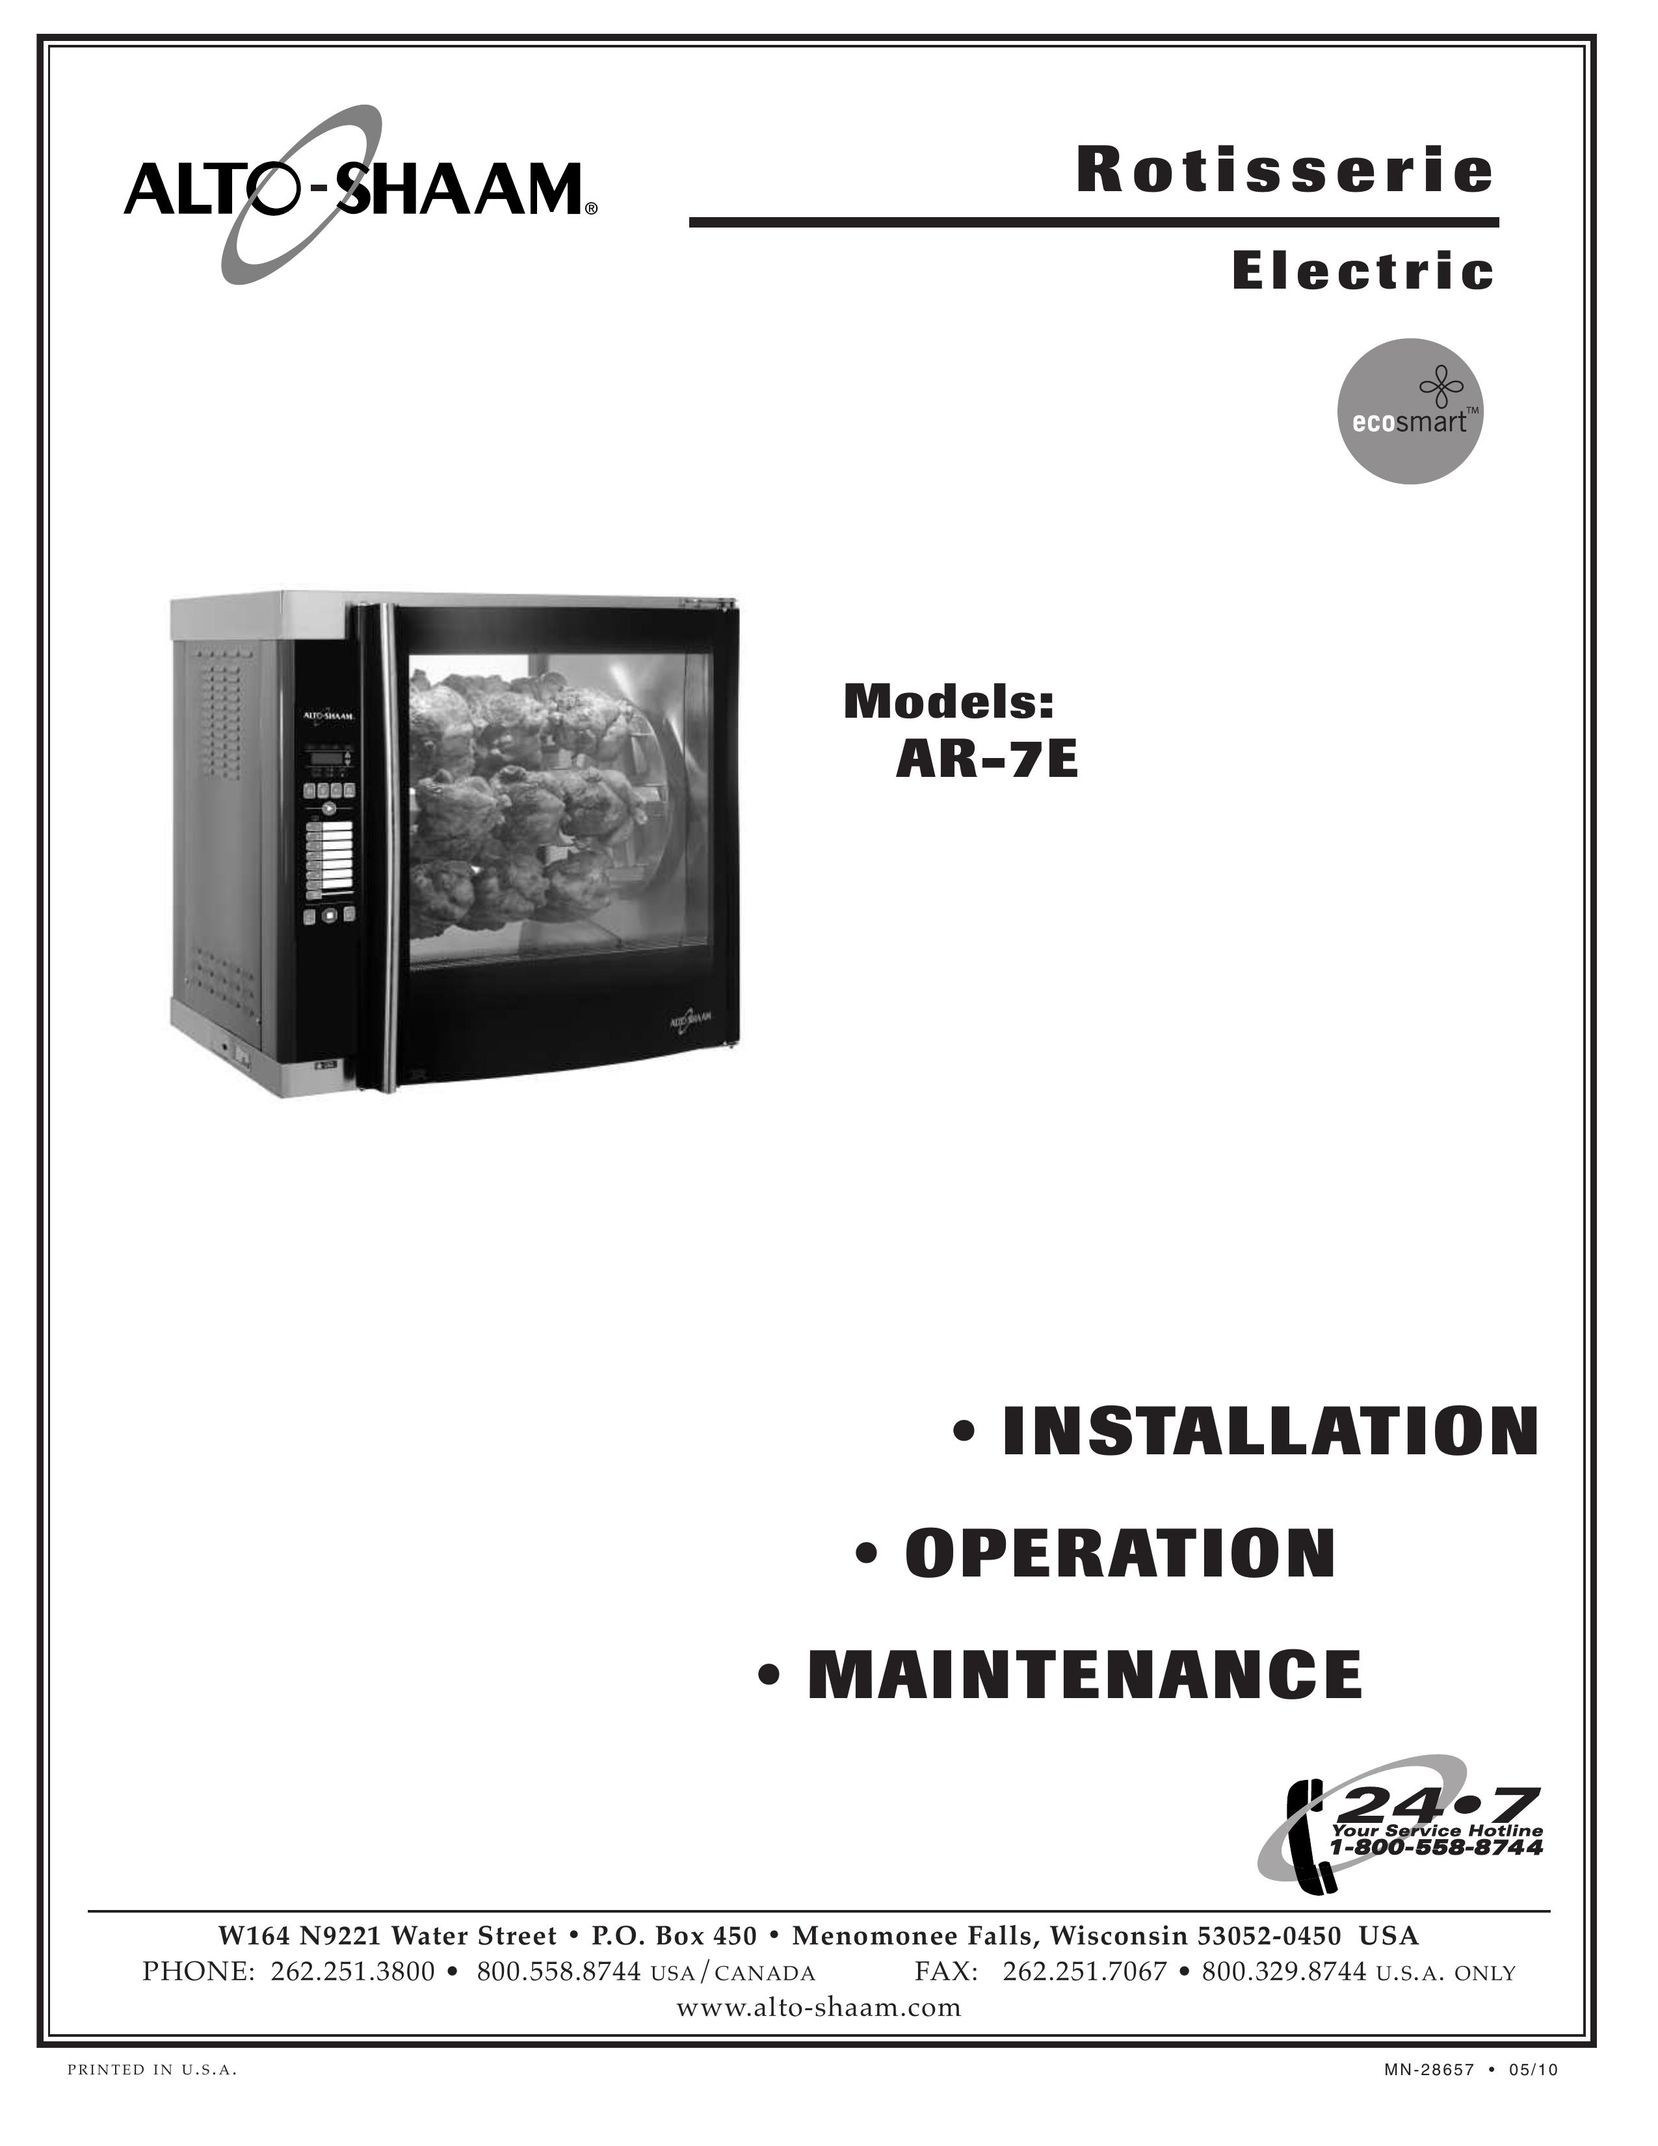 Alto-Shaam AR-7E Convection Oven User Manual